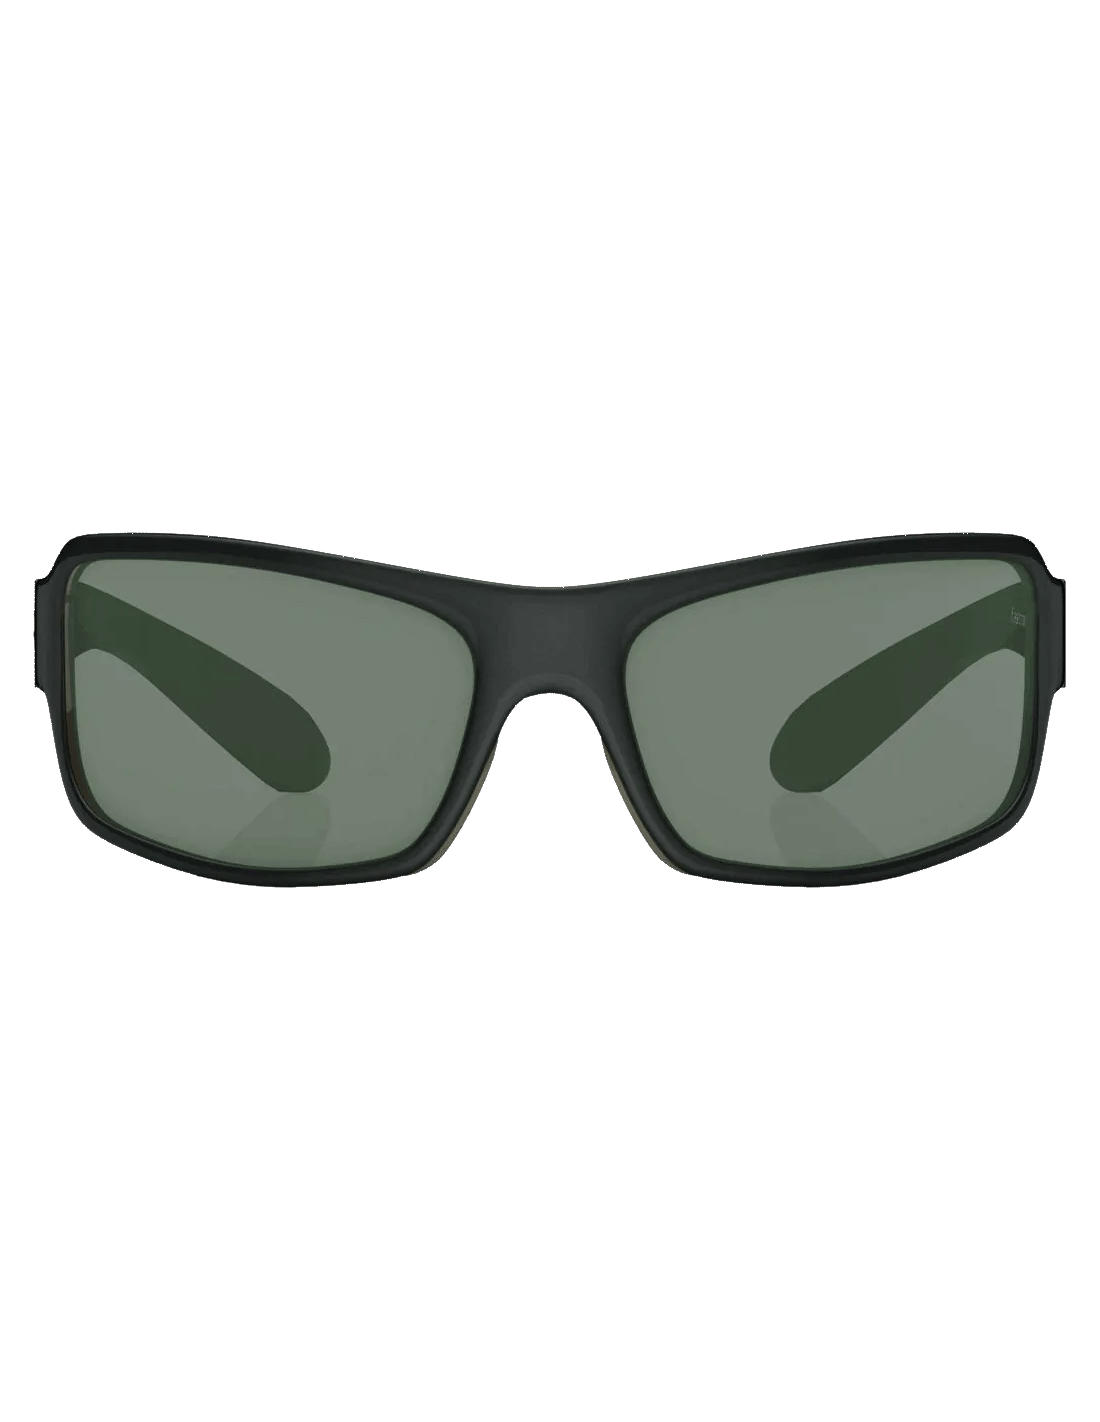 Buy Fastrack Rectangular Sunglasses Green For Men Online @ Best Prices in  India | Flipkart.com